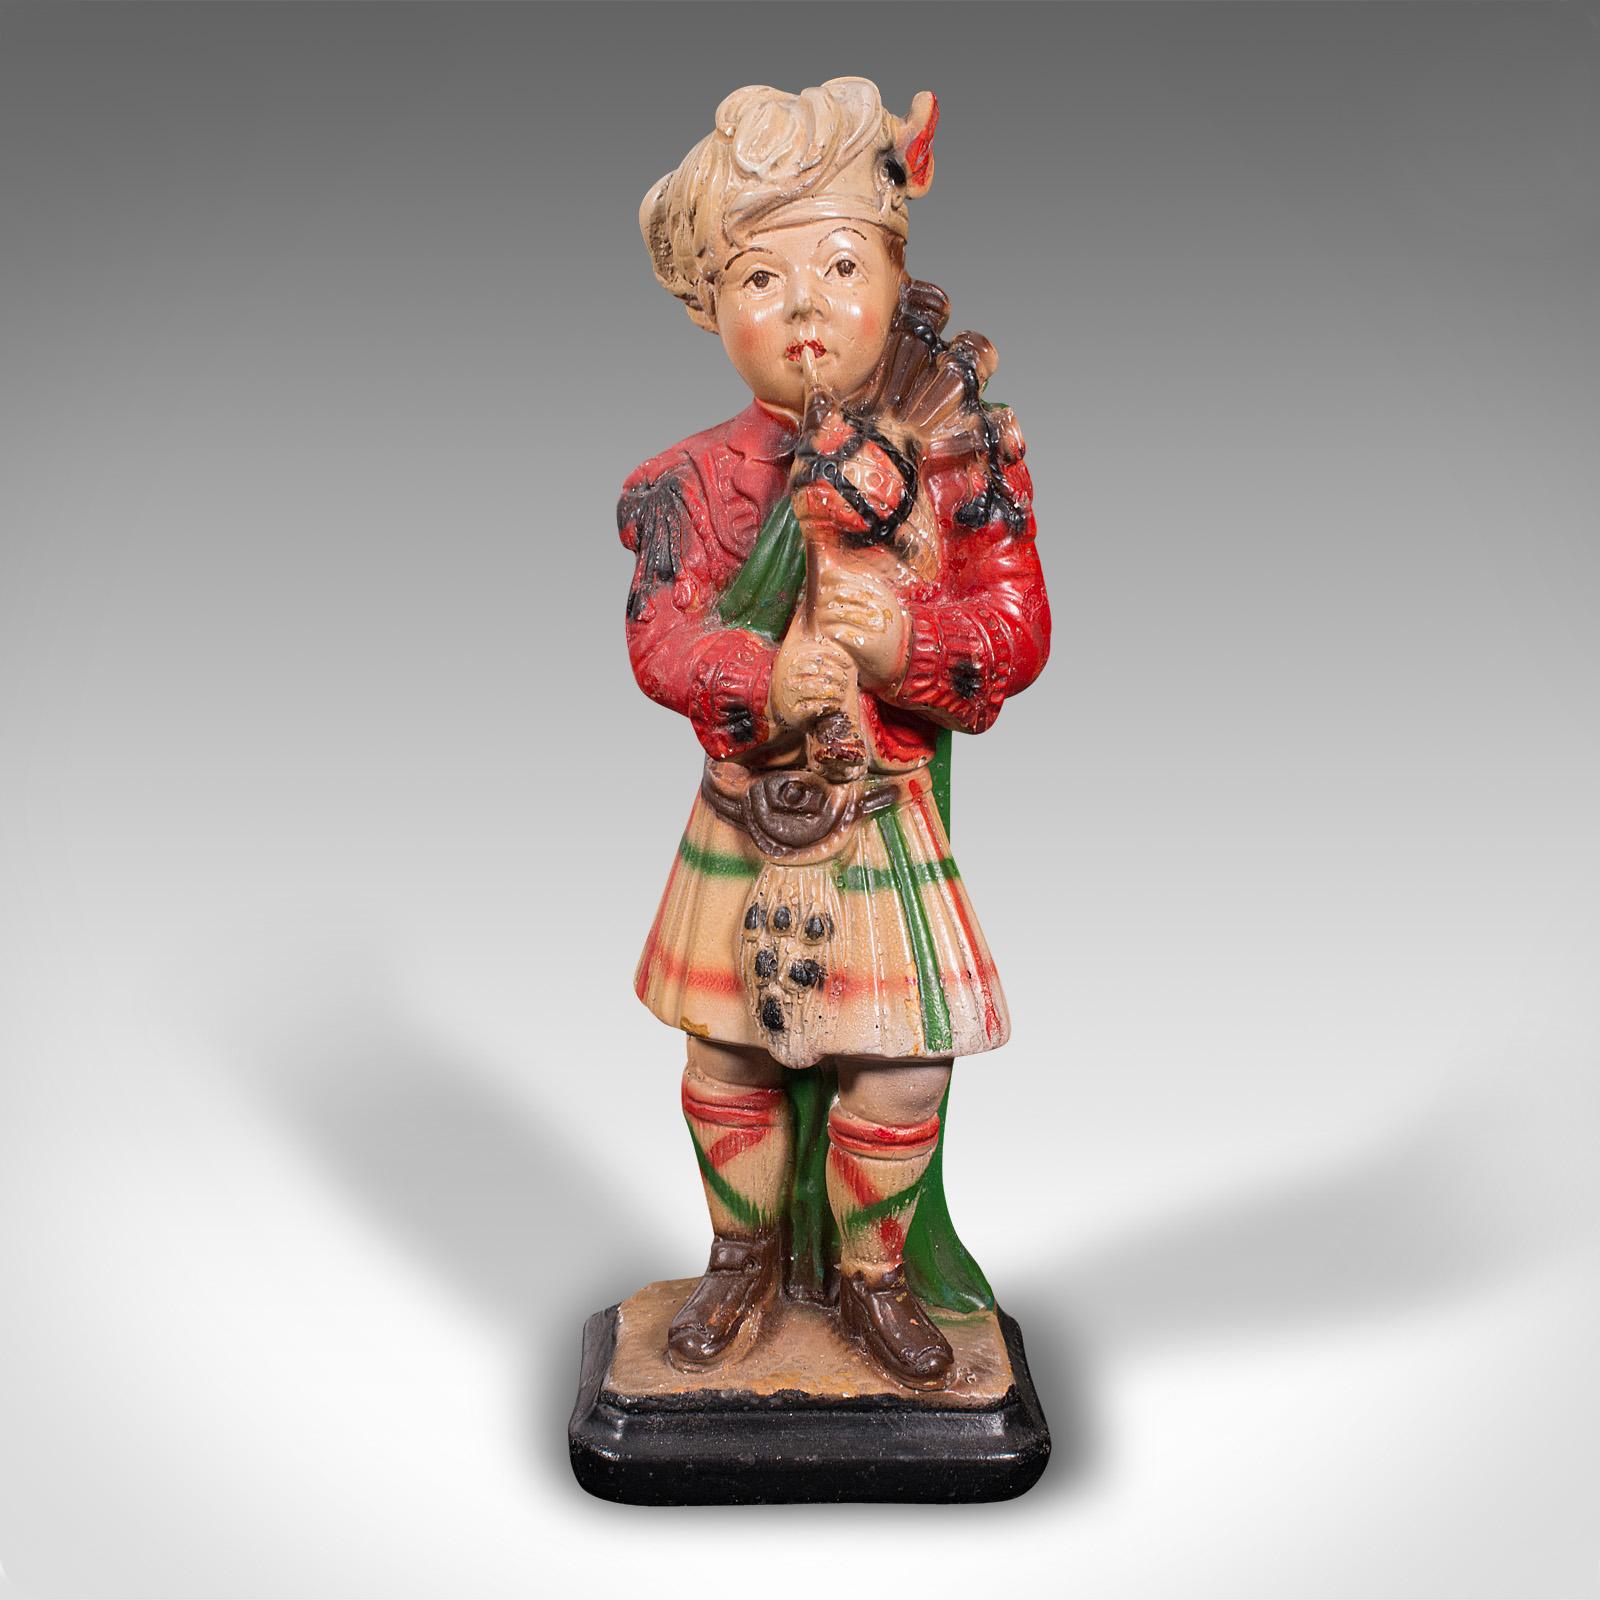 Il s'agit d'une ancienne figurine décorative de joueur de cornemuse. Statue écossaise en plâtre à la manière d'un garde écossais, datant de la fin de la période victorienne, vers 1900.

Un personnage charmant qui plaira aux Écossais et aux